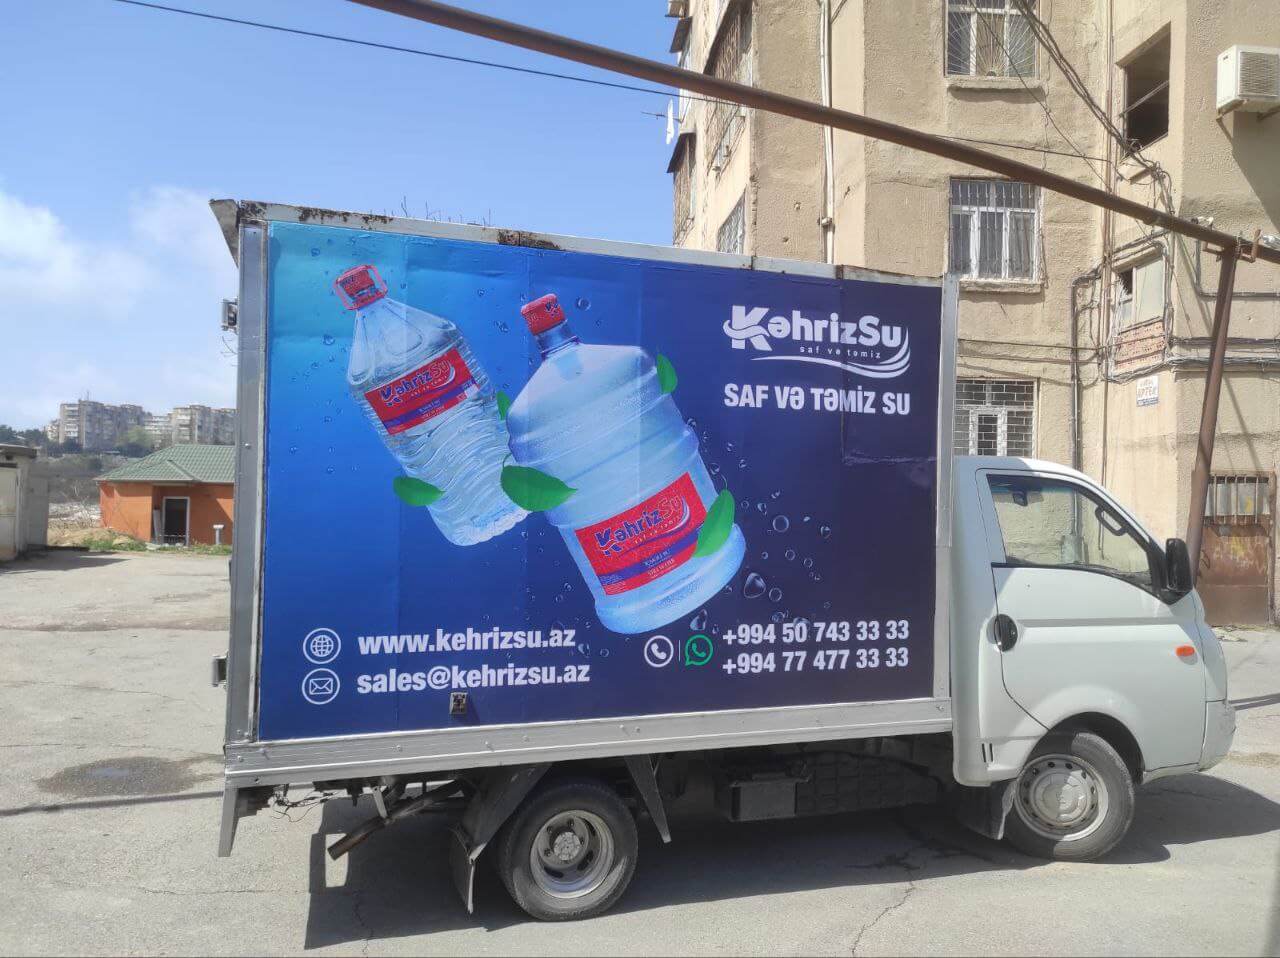 avtomobil üzərinə reklam